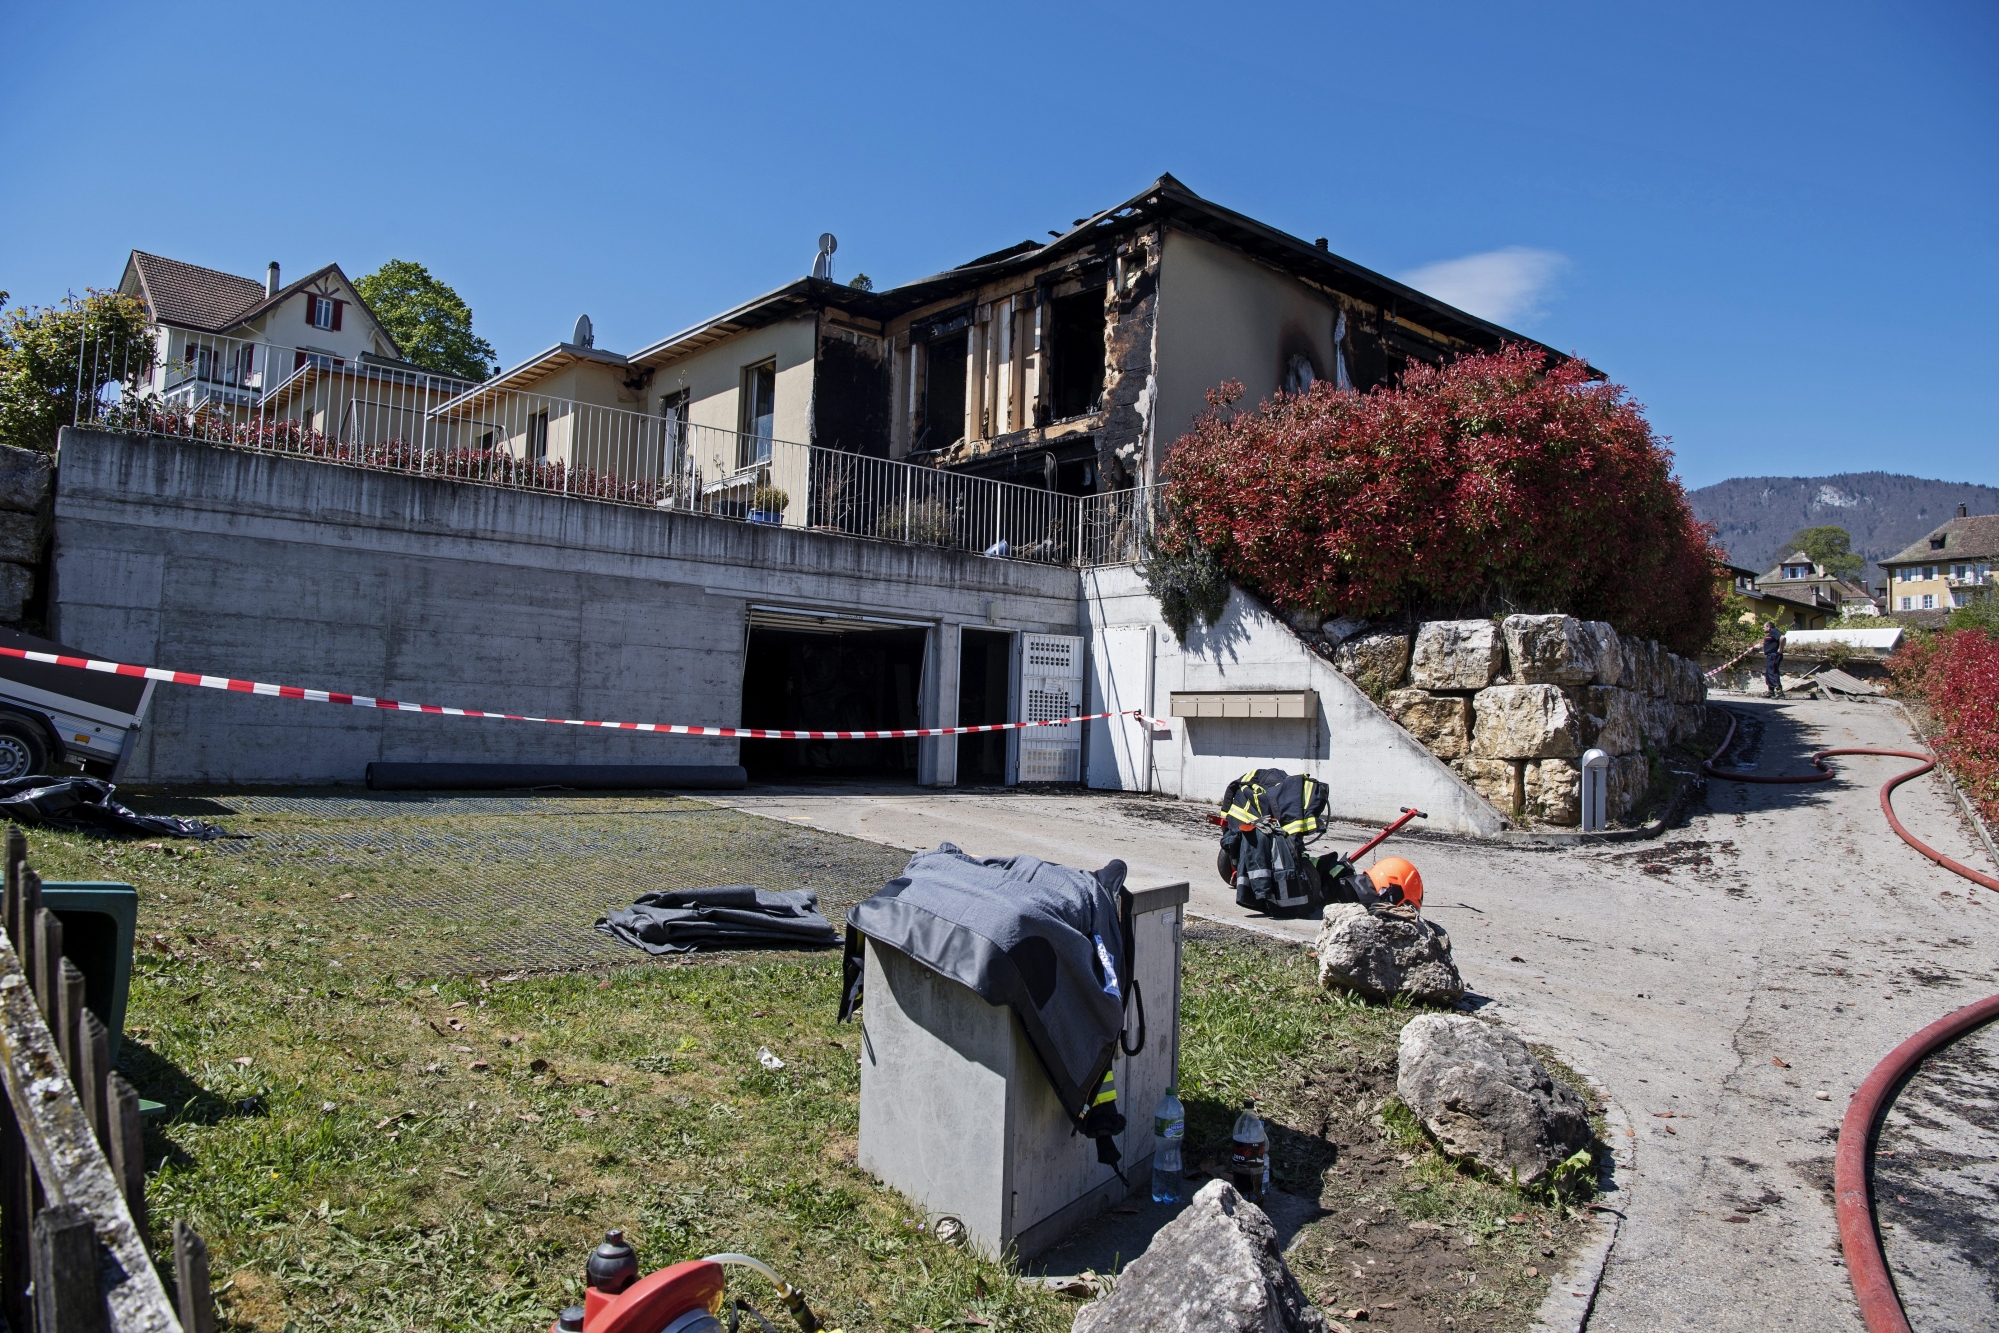 Une inspection générale des trois villas dévastées par les flammes aidera à définir ce que les assurances seront censées verser.